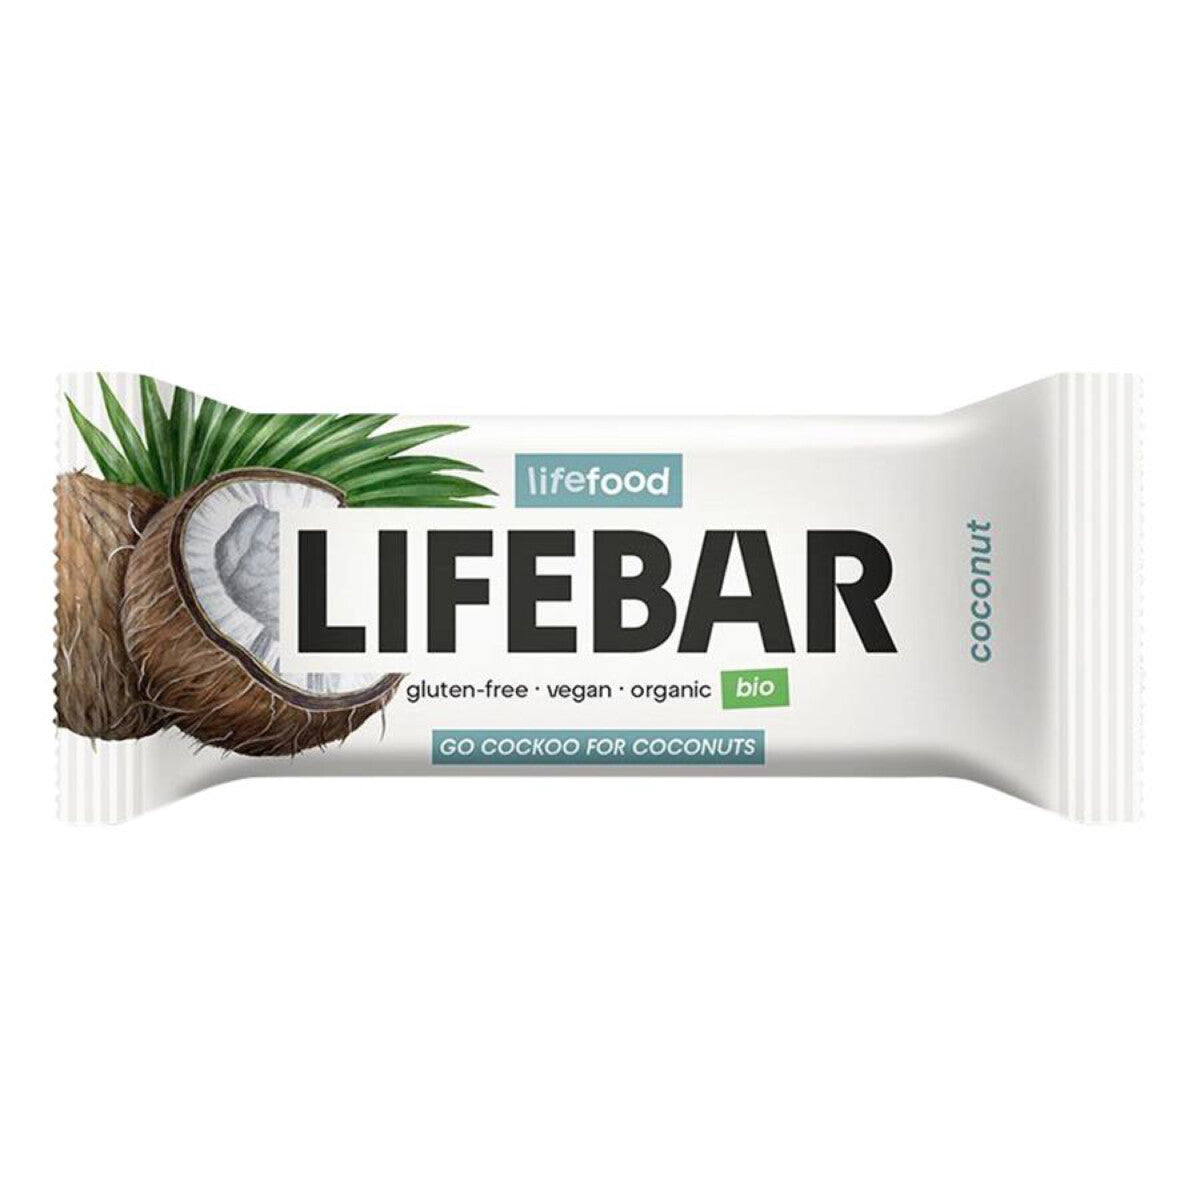  LIFEBAR Lifebar Kokos - 40 g